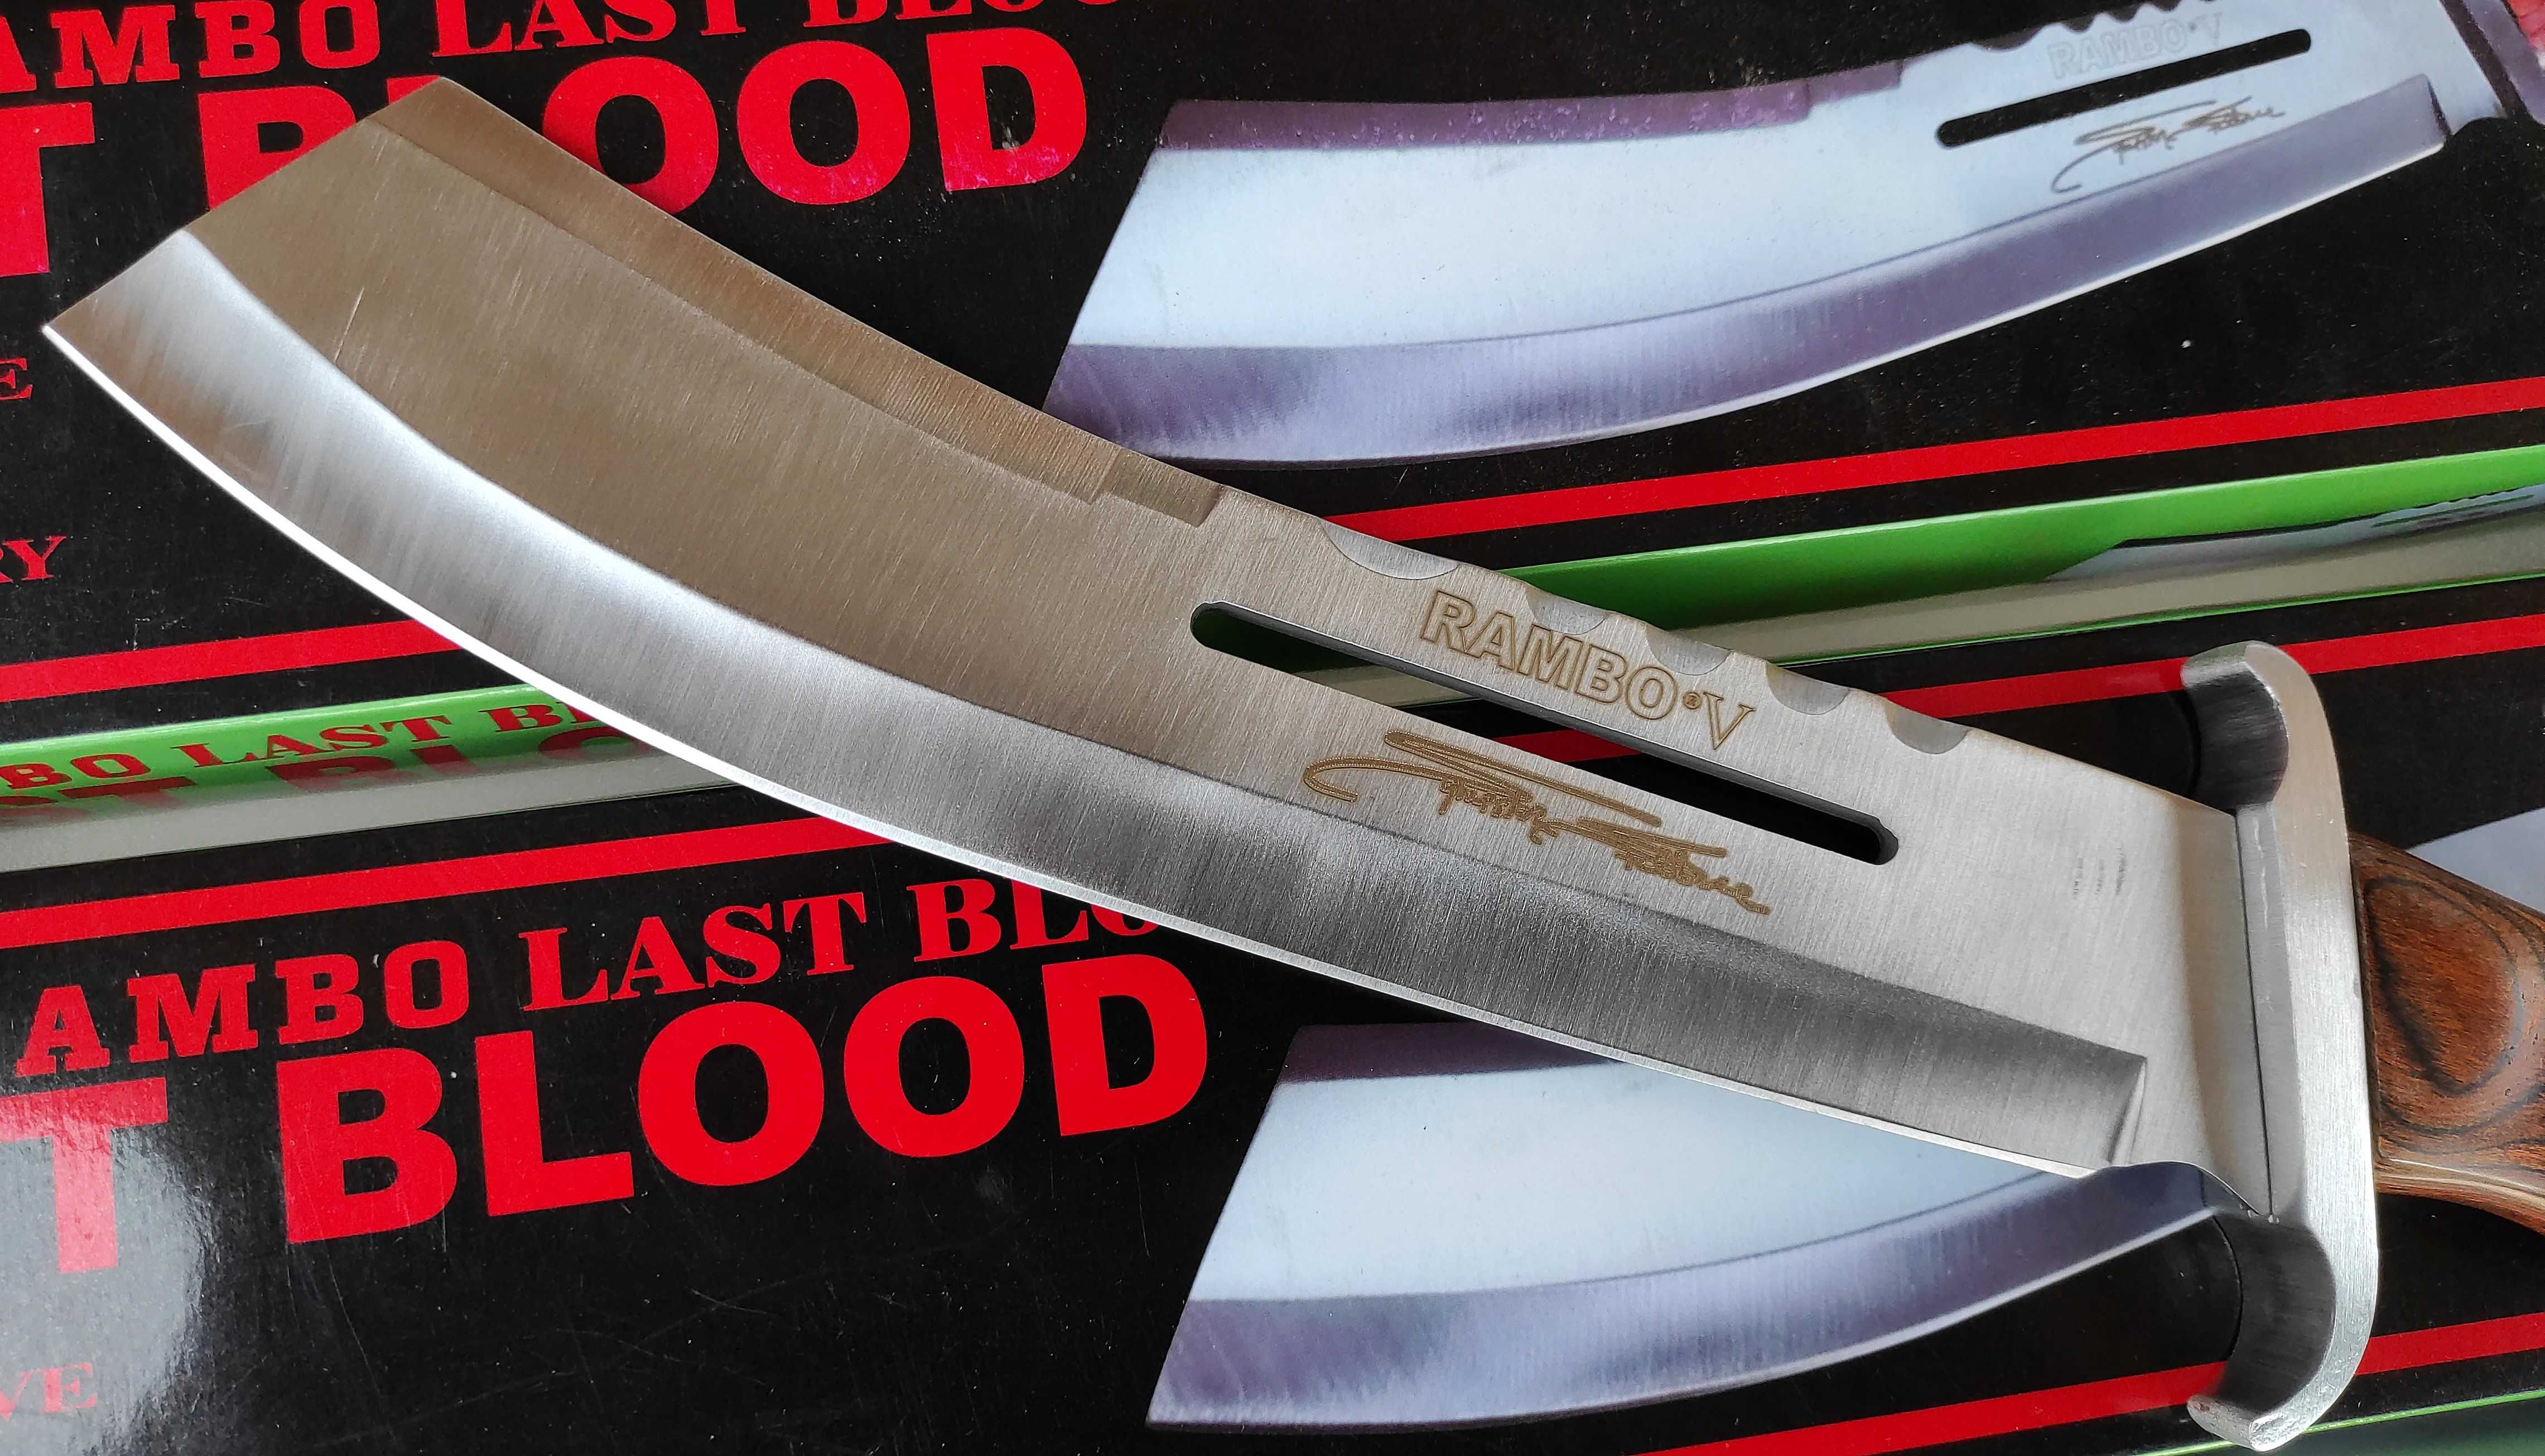 Туристически нож - мачете Rambo last blood